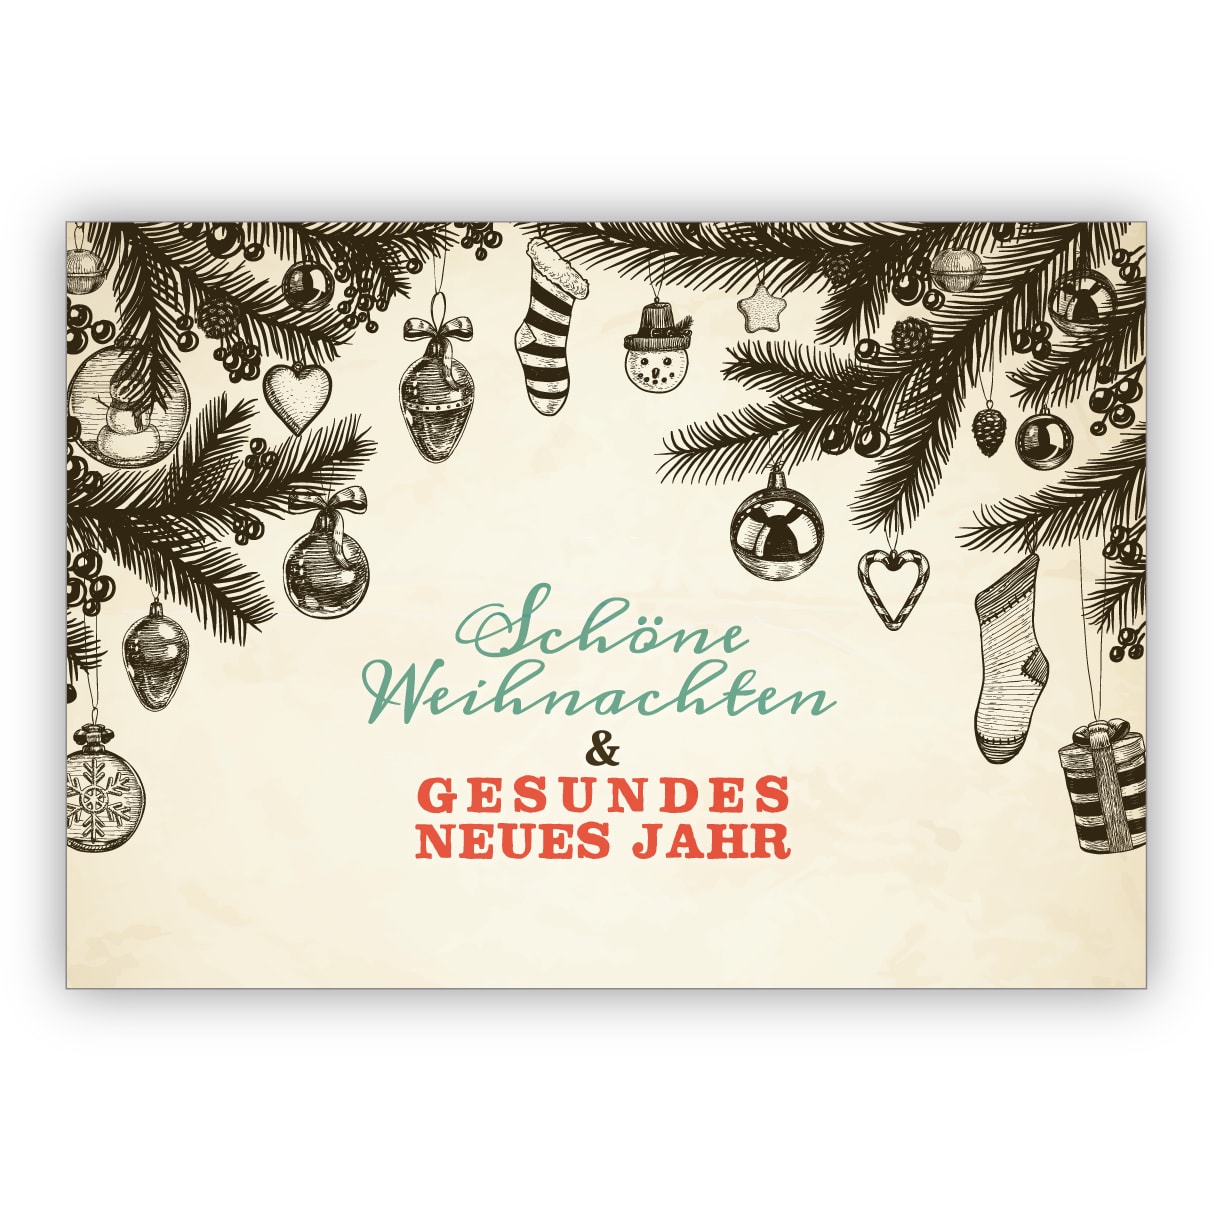 Entzückende handgemalte Weihnachtskarte mit Vintage Ornamenten: Schöne Weihnachten & gesundes neues Jahr